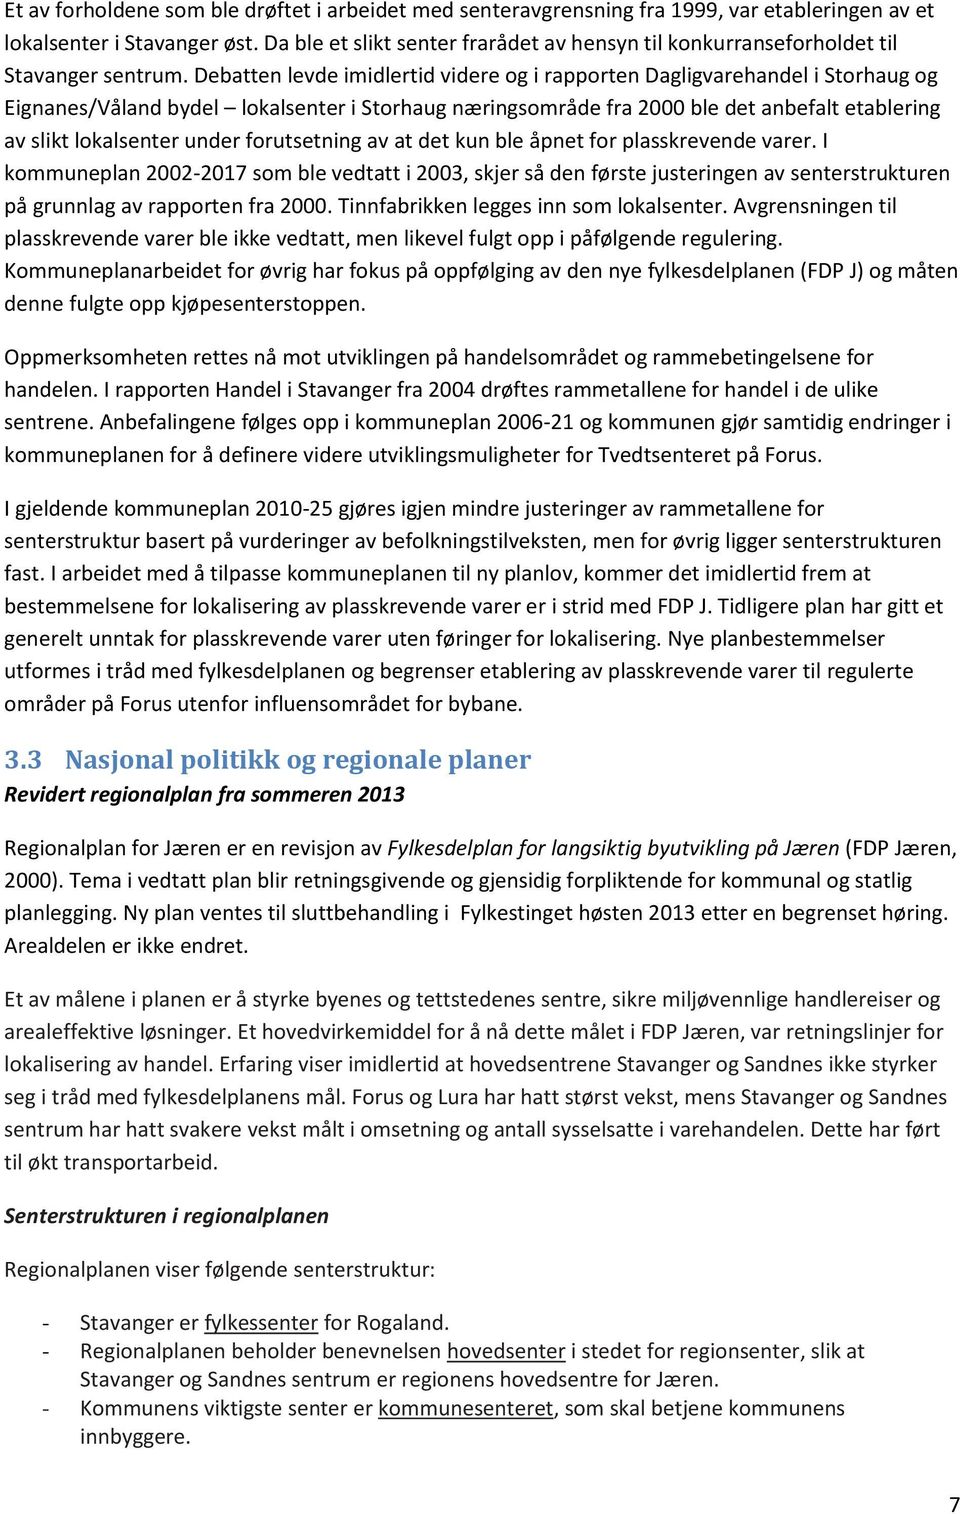 Debatten levde imidlertid videre og i rapporten Dagligvarehandel i Storhaug og Eignanes/Våland bydel lokalsenter i Storhaug næringsområde fra 2000 ble det anbefalt etablering av slikt lokalsenter